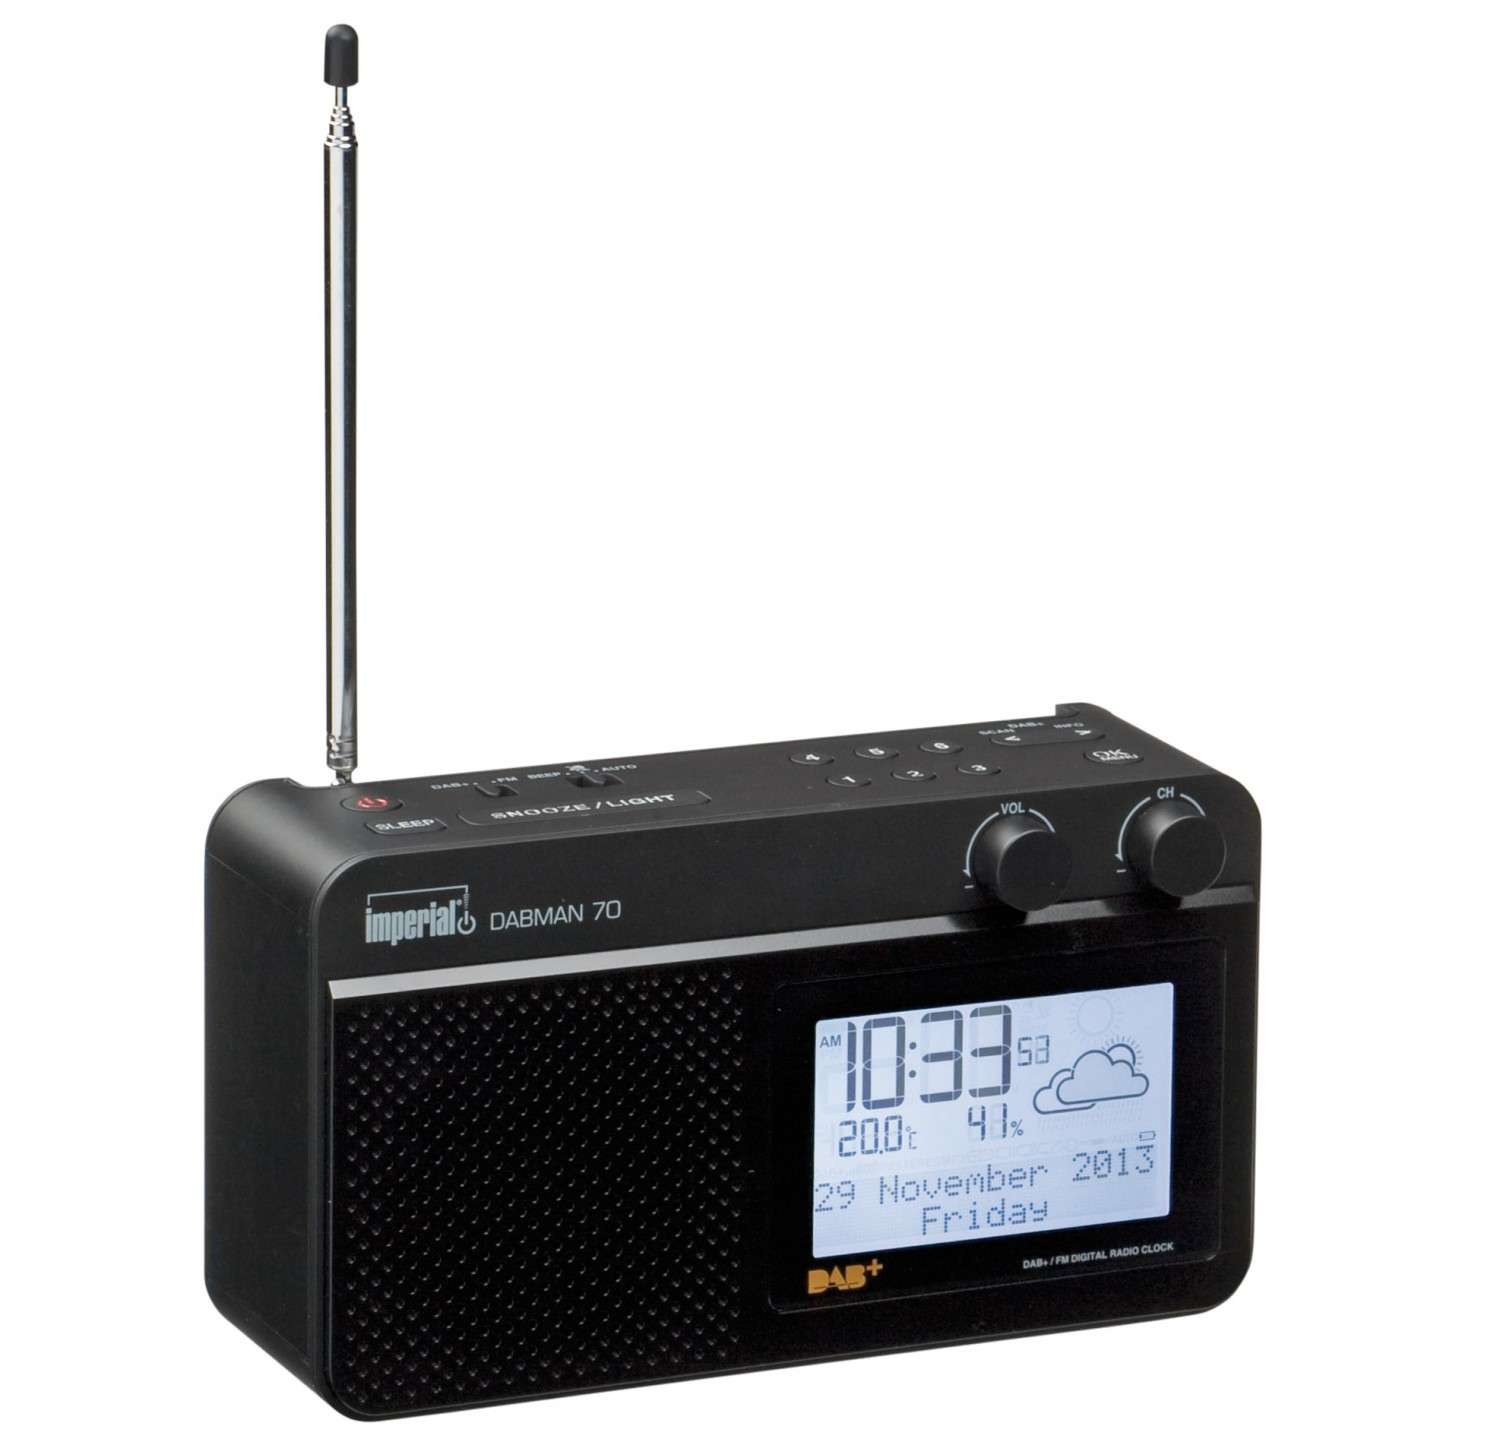 Digitalbox Imperial DABMAN70 - DAB+ Radio im Test - sehr gut